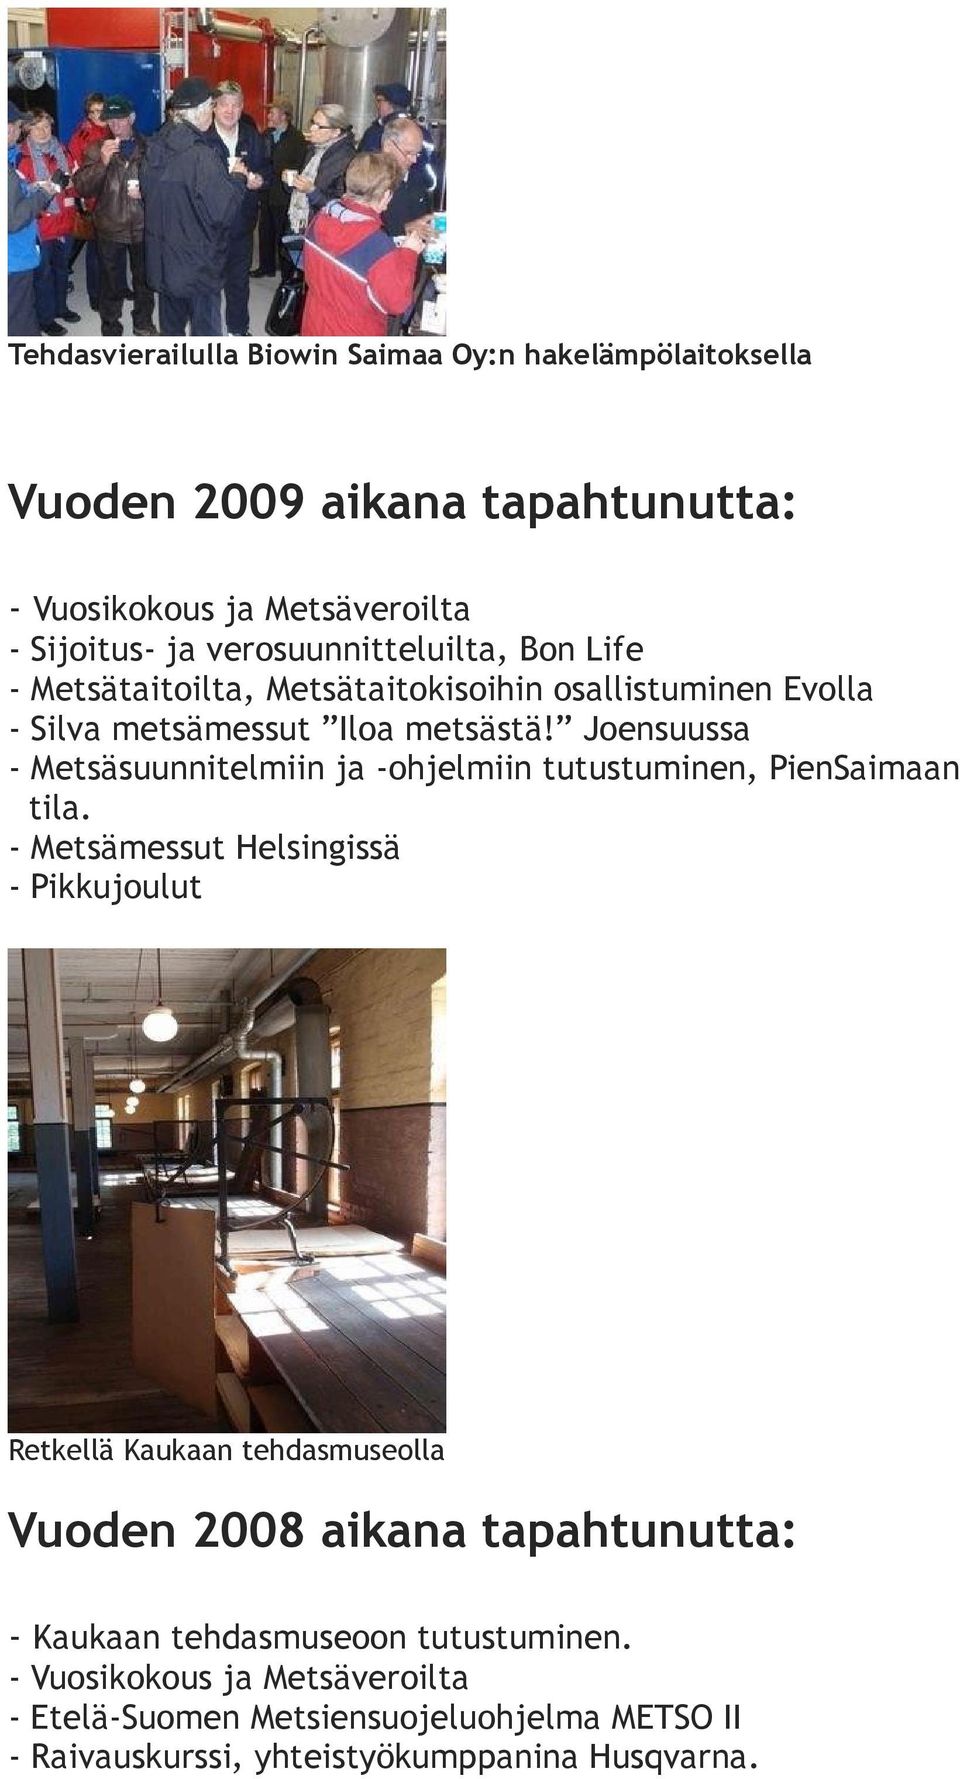 Joensuussa - Metsäsuunnitelmiin ja -ohjelmiin tutustuminen, PienSaimaan tila.